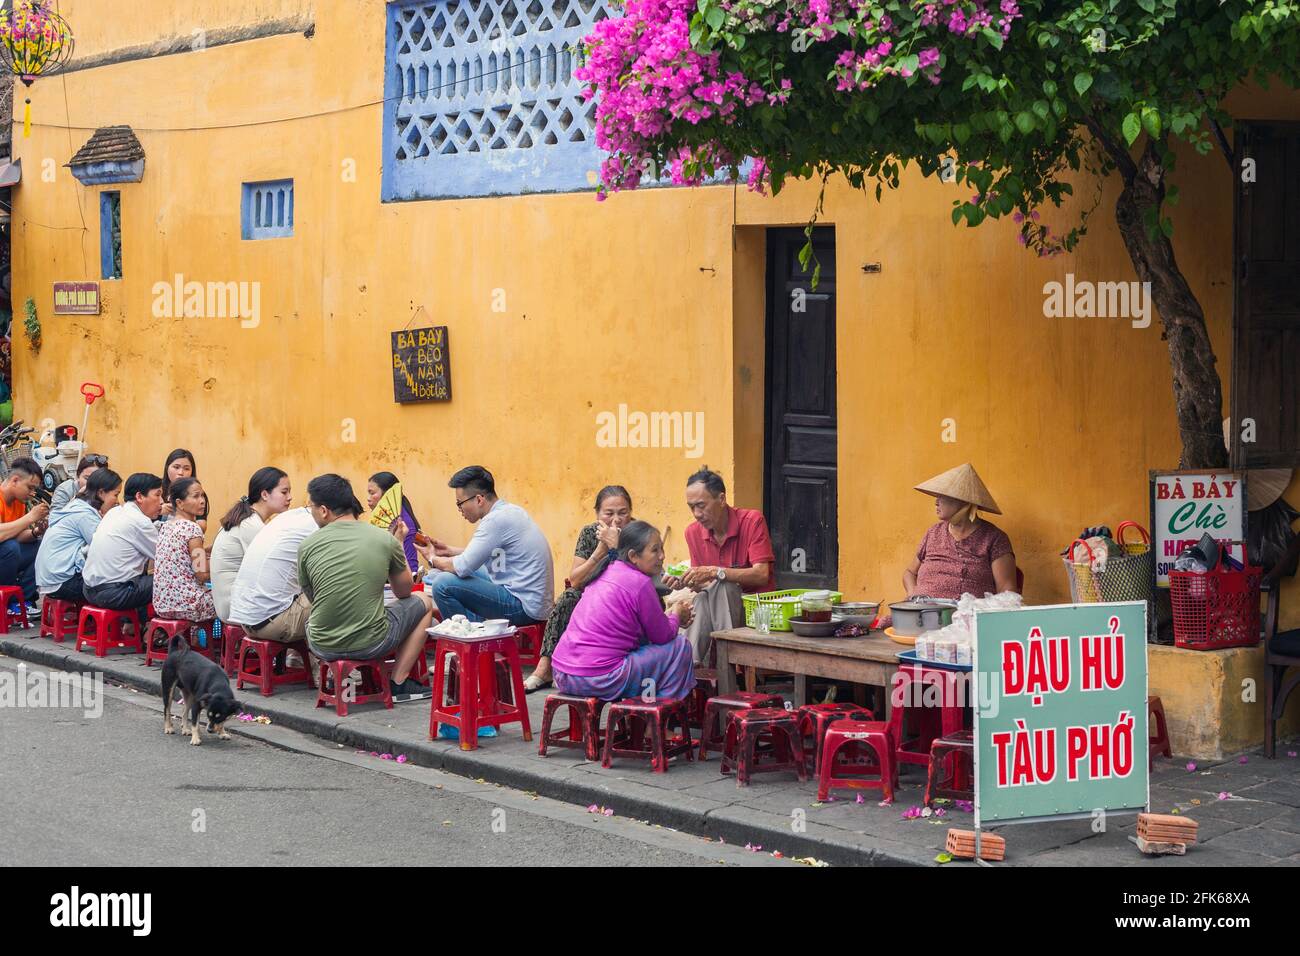 Affollato bar sulla strada nella città vecchia sotto bellissimi fiori bouganville, Hoi An, Vietnam Foto Stock